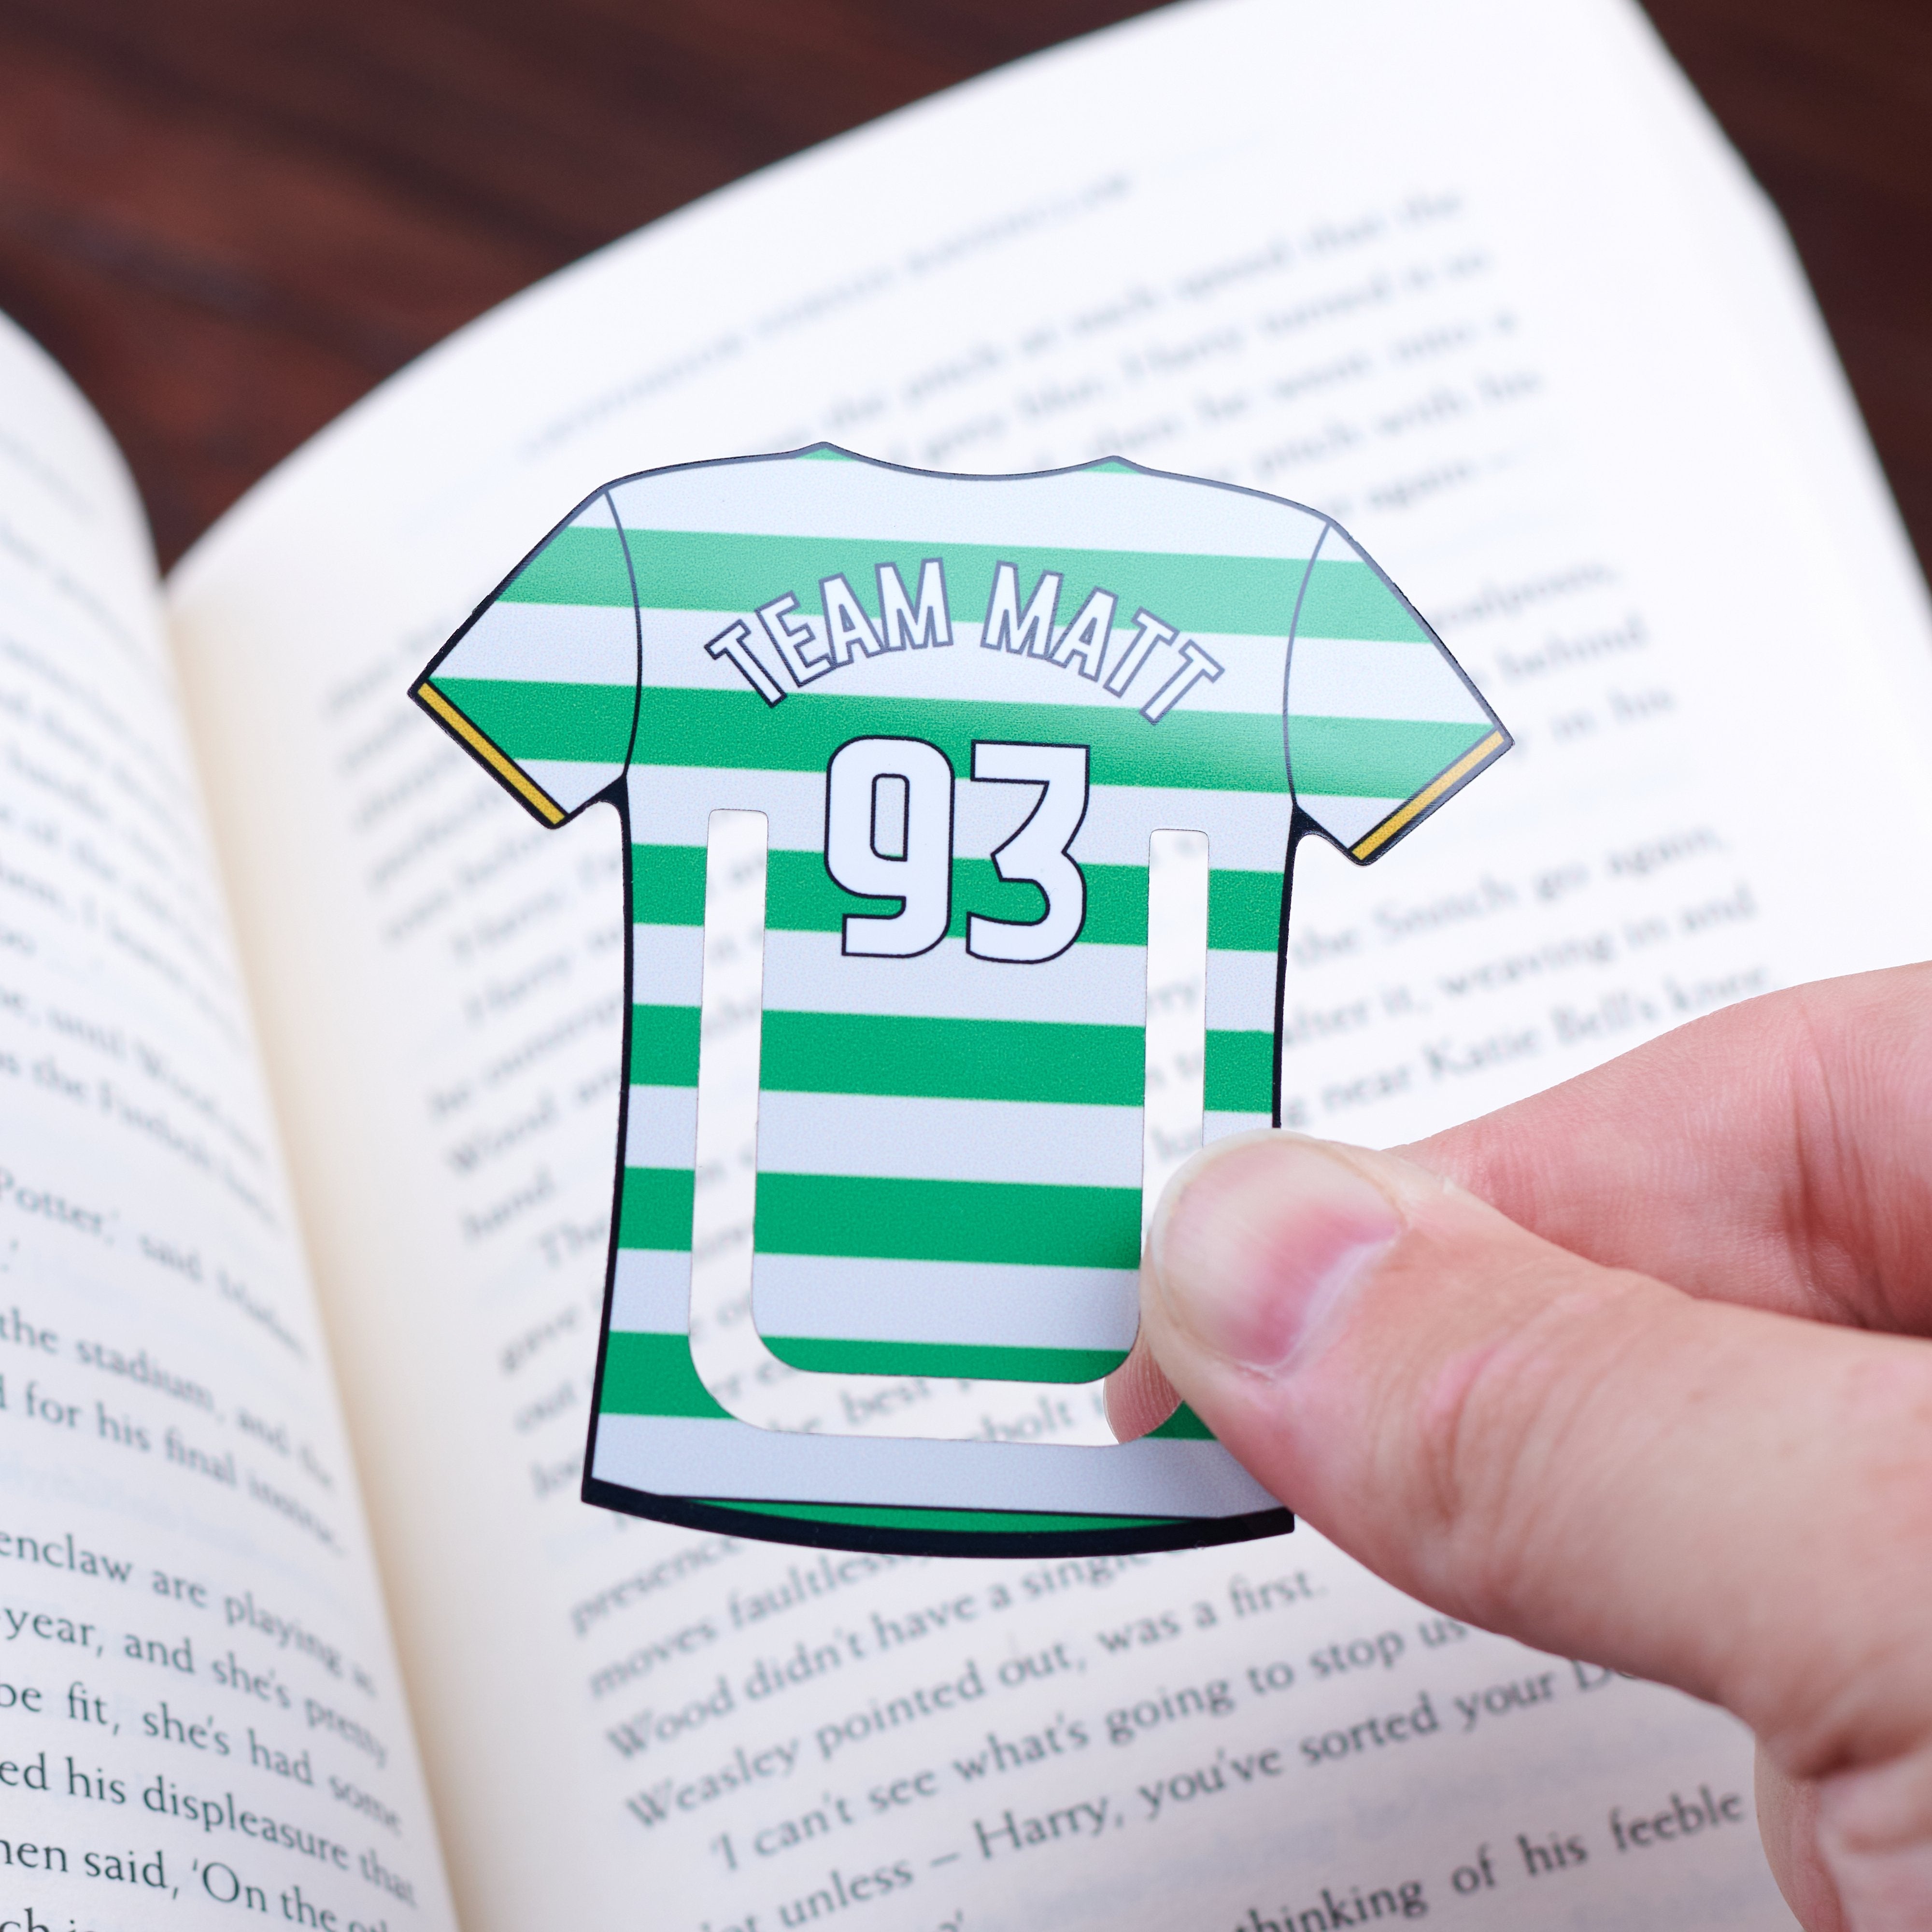 Oakdene Designs Keepsakes & Tokens Personalised Football Team Mini Bookmark